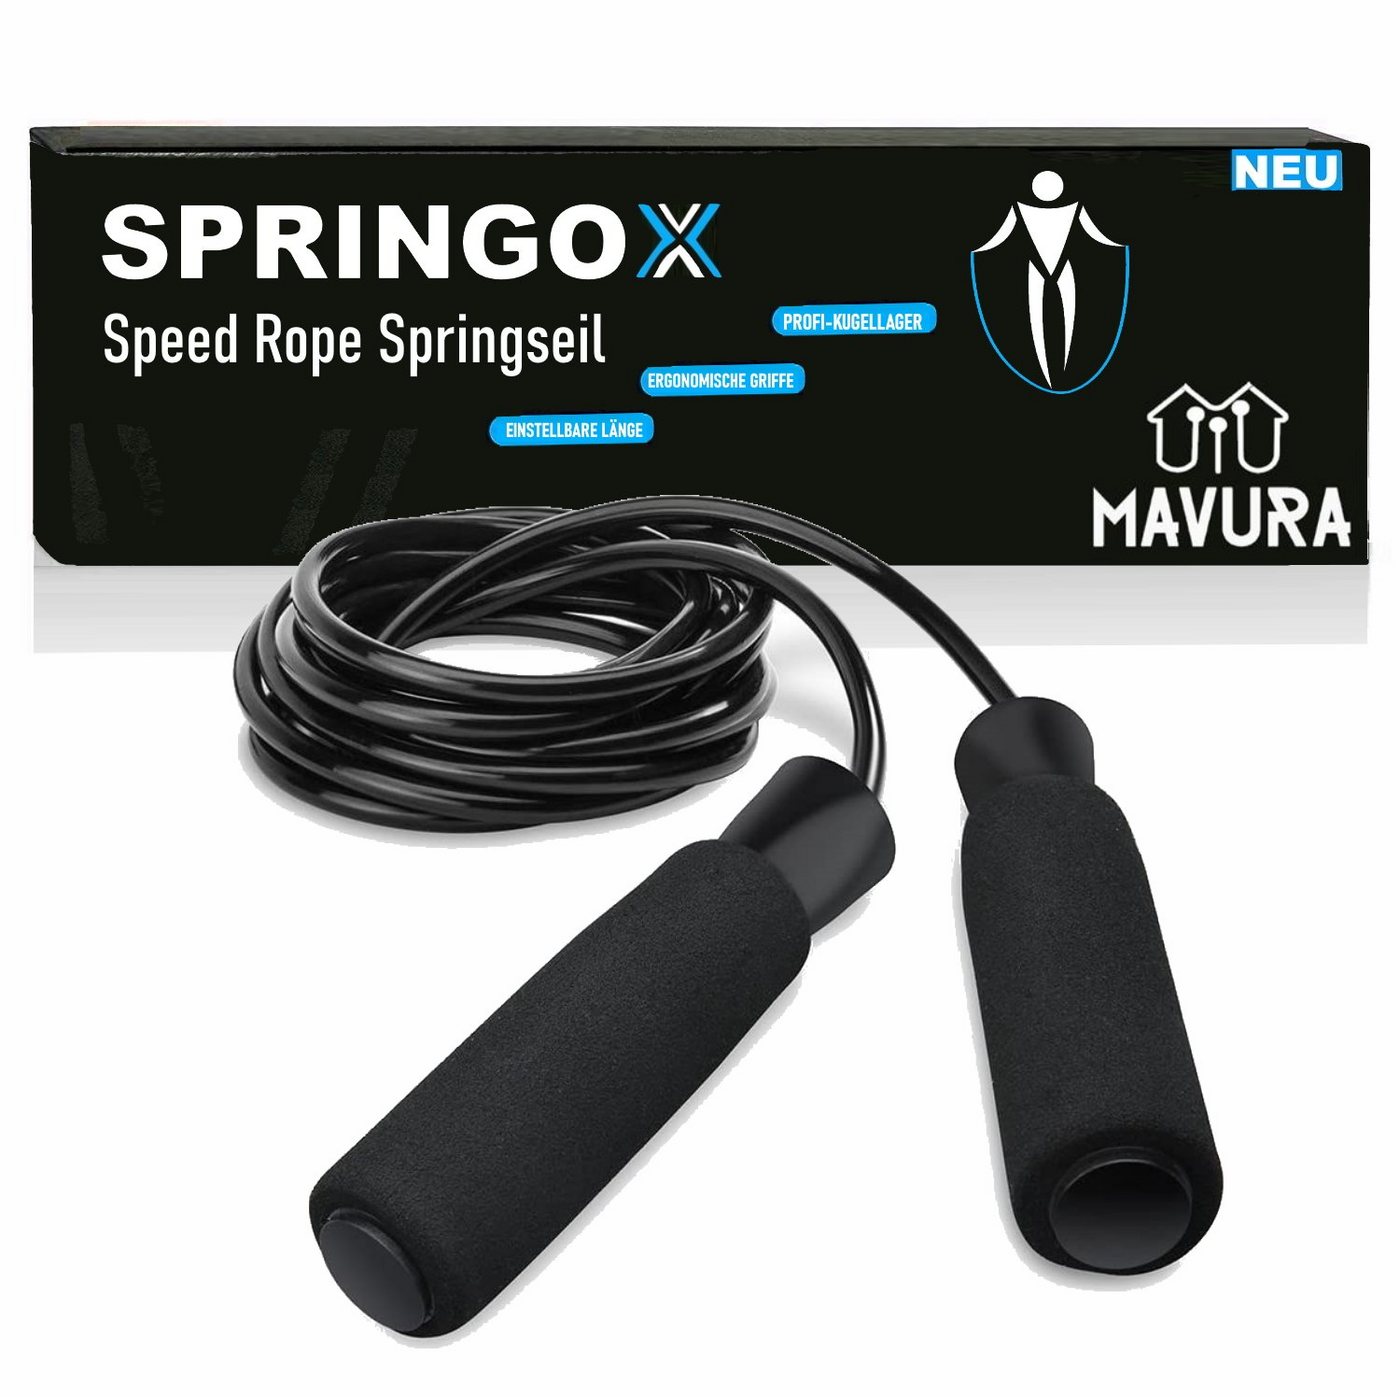 MAVURA Springseil SPRINGOX Premium Speed Rope Spring Seil Profi Fitness Seilspringen, Boxen Jump Stahl Hüpfseil Anti-Rutsch Griffe verstellbare Länge von MAVURA